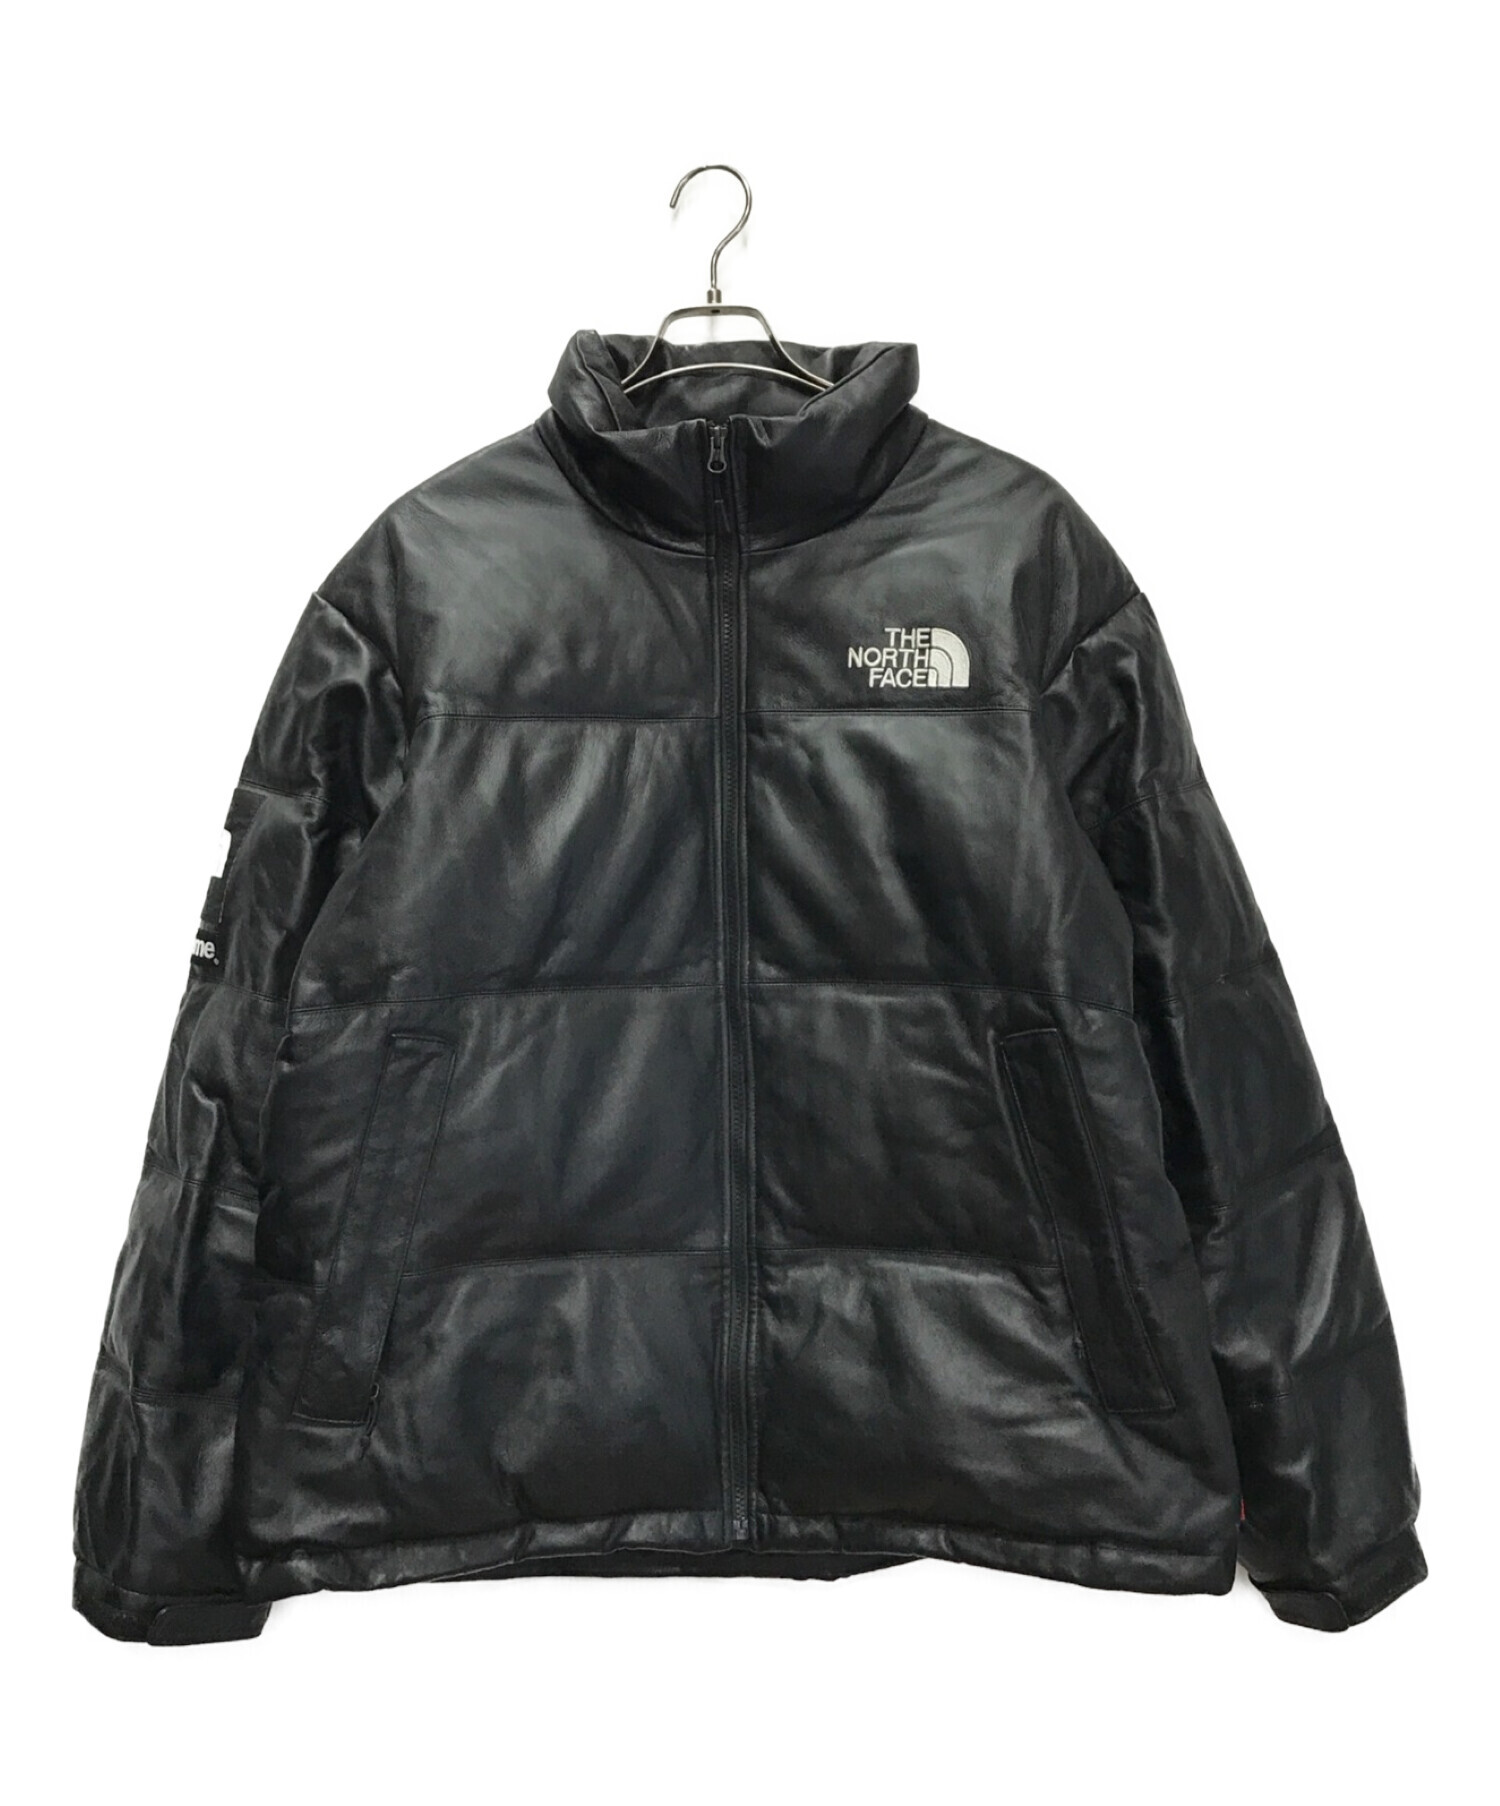 SUPREME (シュプリーム) THE NORTH FACE (ザノースフェイス) Leather Nuptse Jacket ブラック サイズ:XL